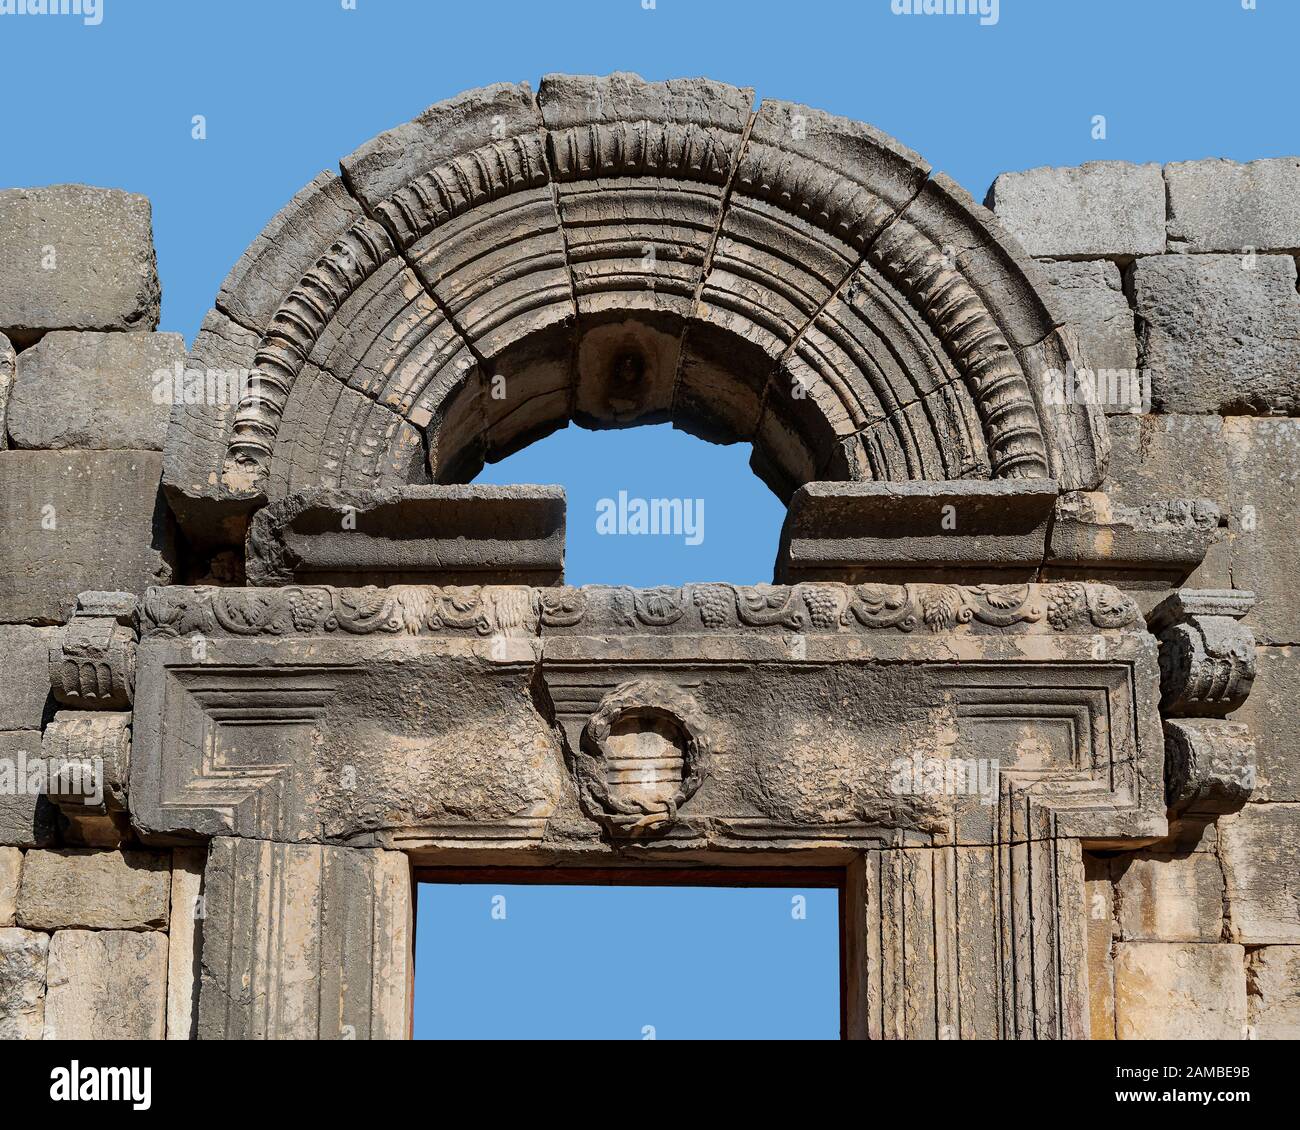 isolato ritaglio del architrave di pietra e arco di una porta in una sinagoga di epoca talmudica nel parco nazionale di bar'am in israele su uno sfondo blu cielo Foto Stock